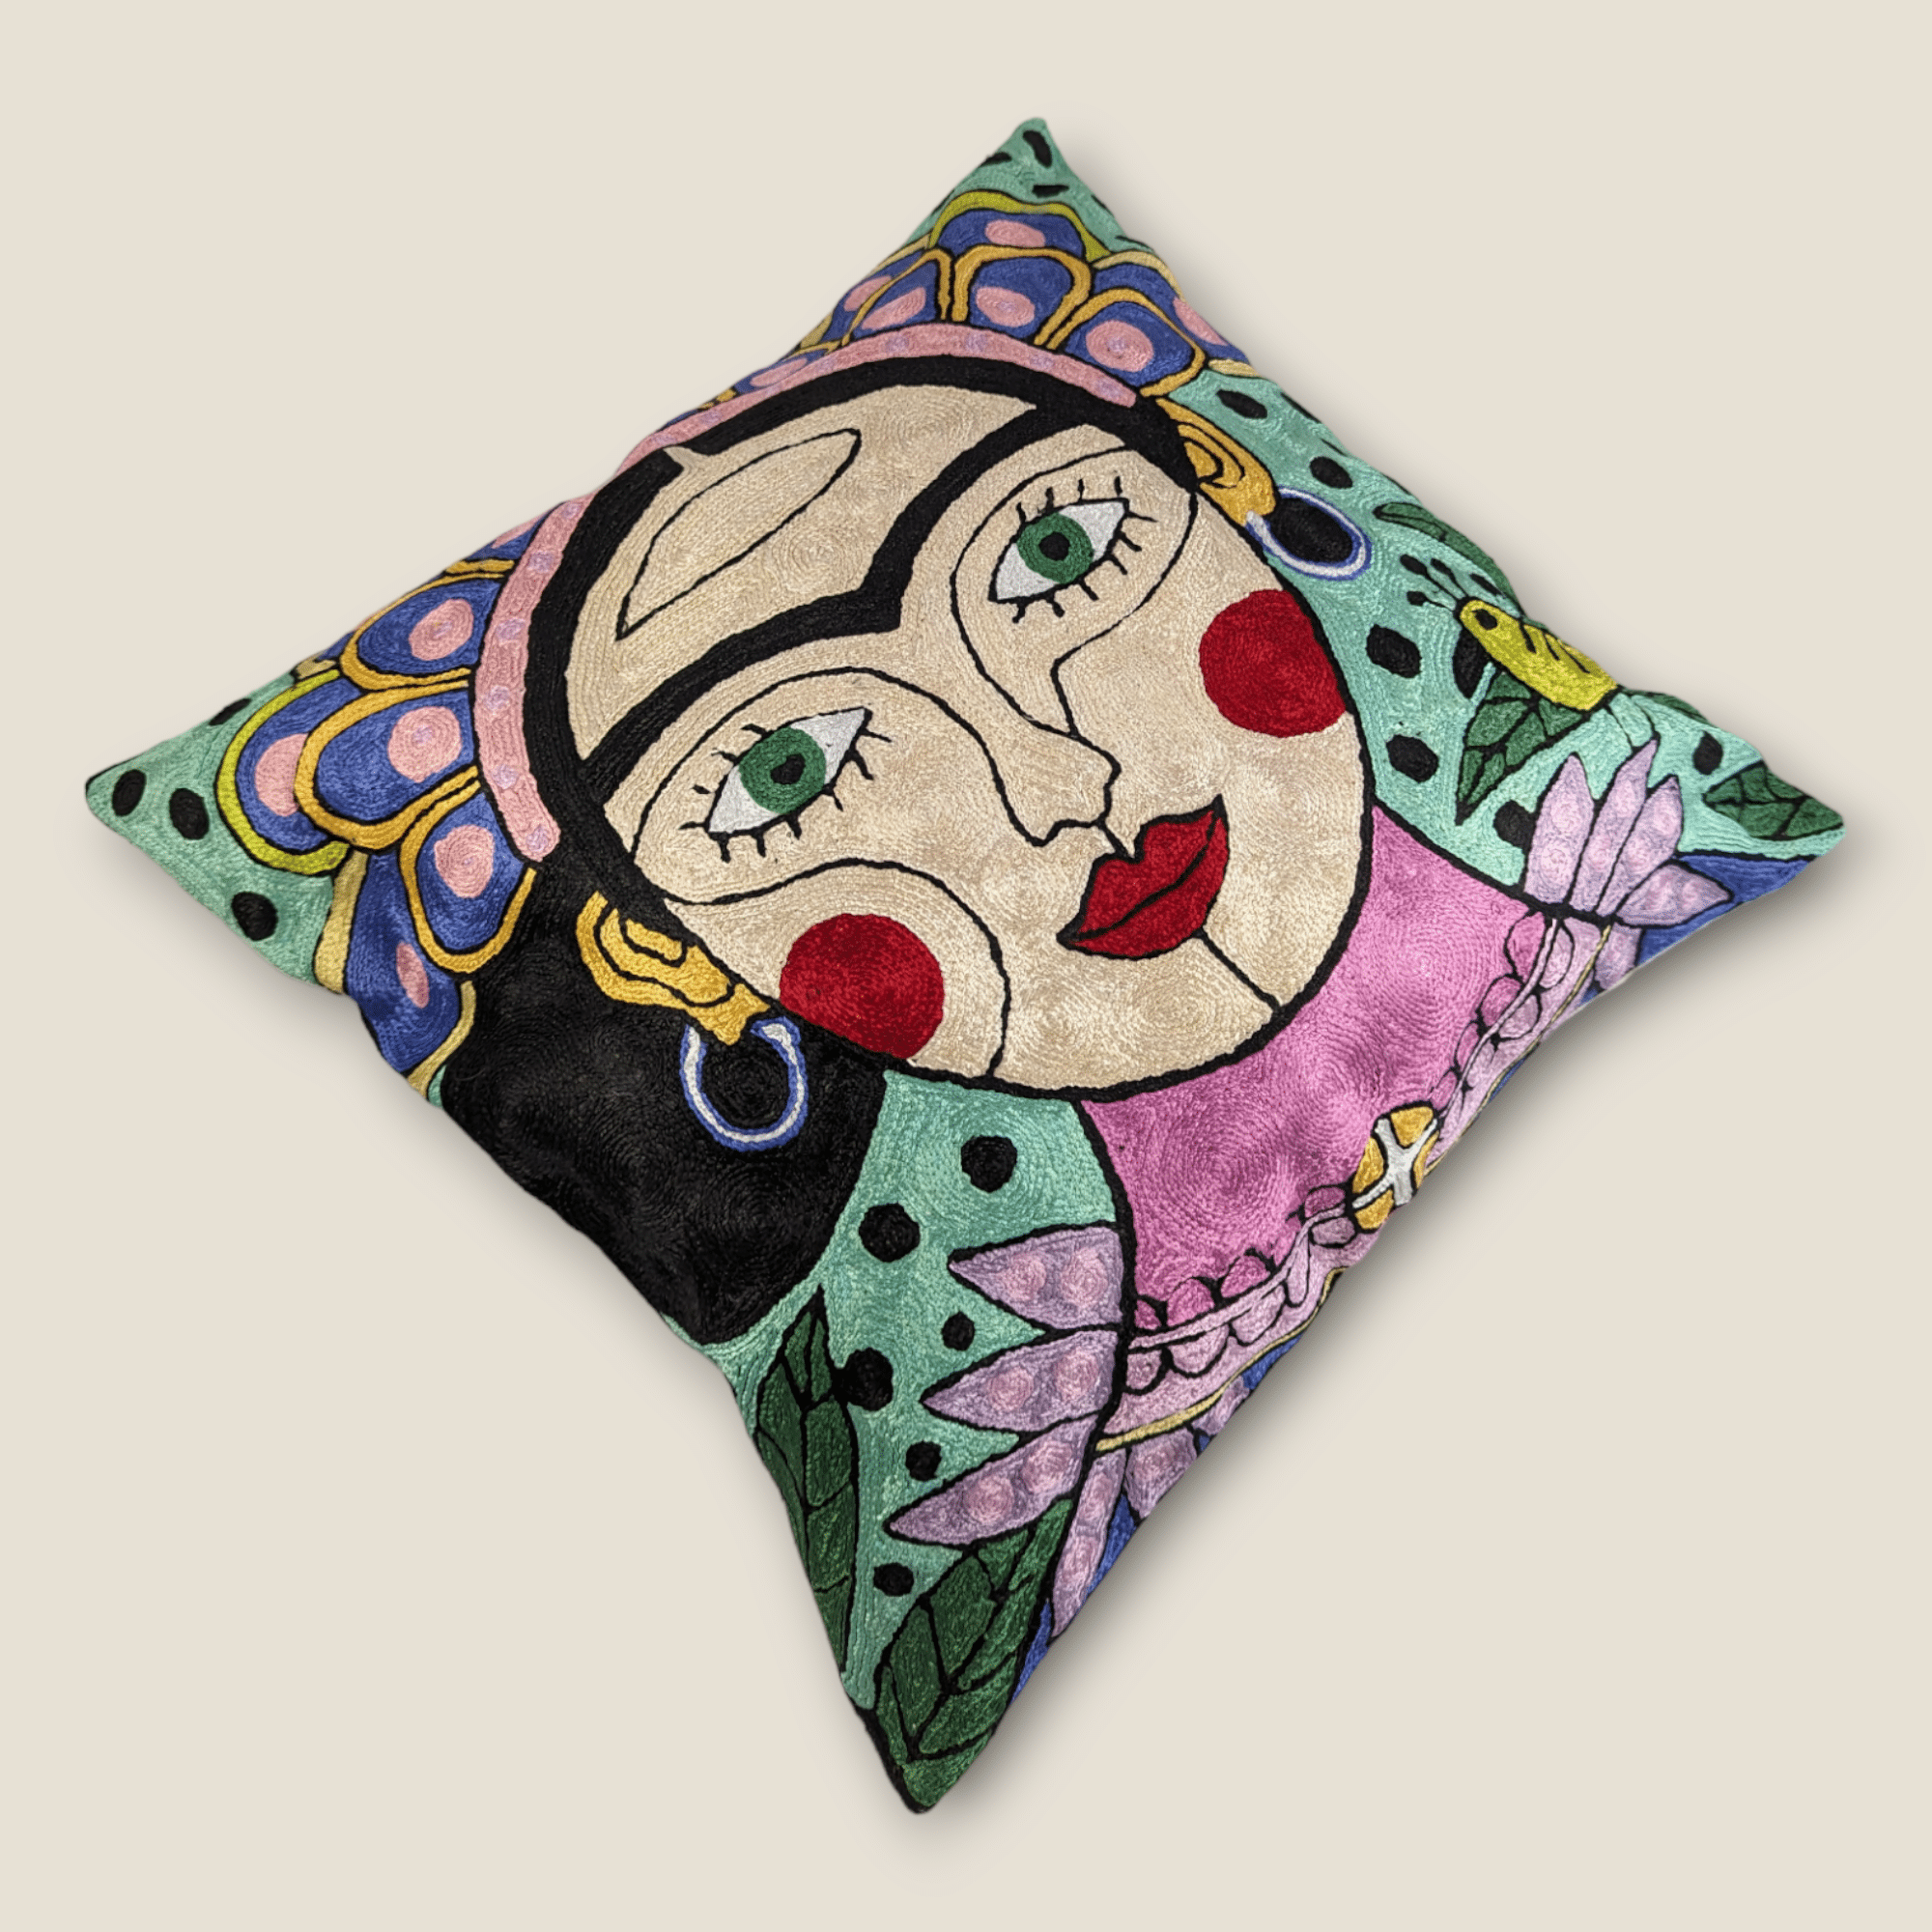 Hand Embroidered Silk Cushion Cover - Freida Kahlo